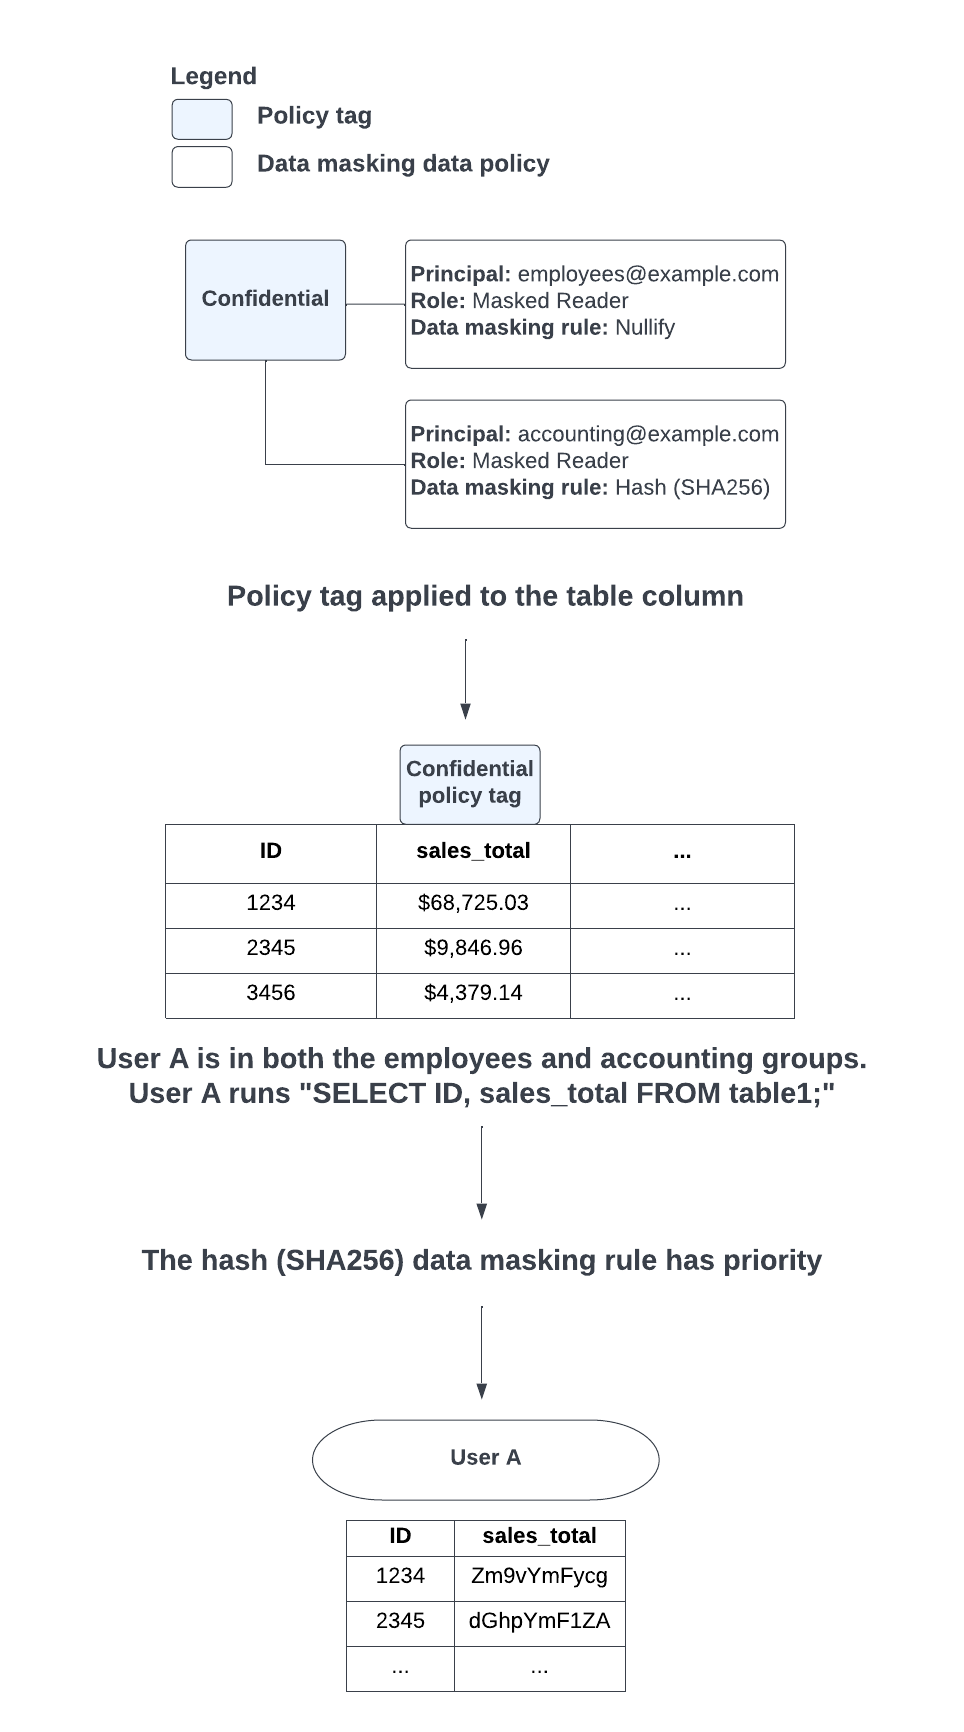 如果由于用户所属的群组而导致在应用设为“Null”和哈希 (SHA-256) 数据遮盖规则时发生了冲突，则优先使用哈希 (SHA-256) 数据遮盖规则。